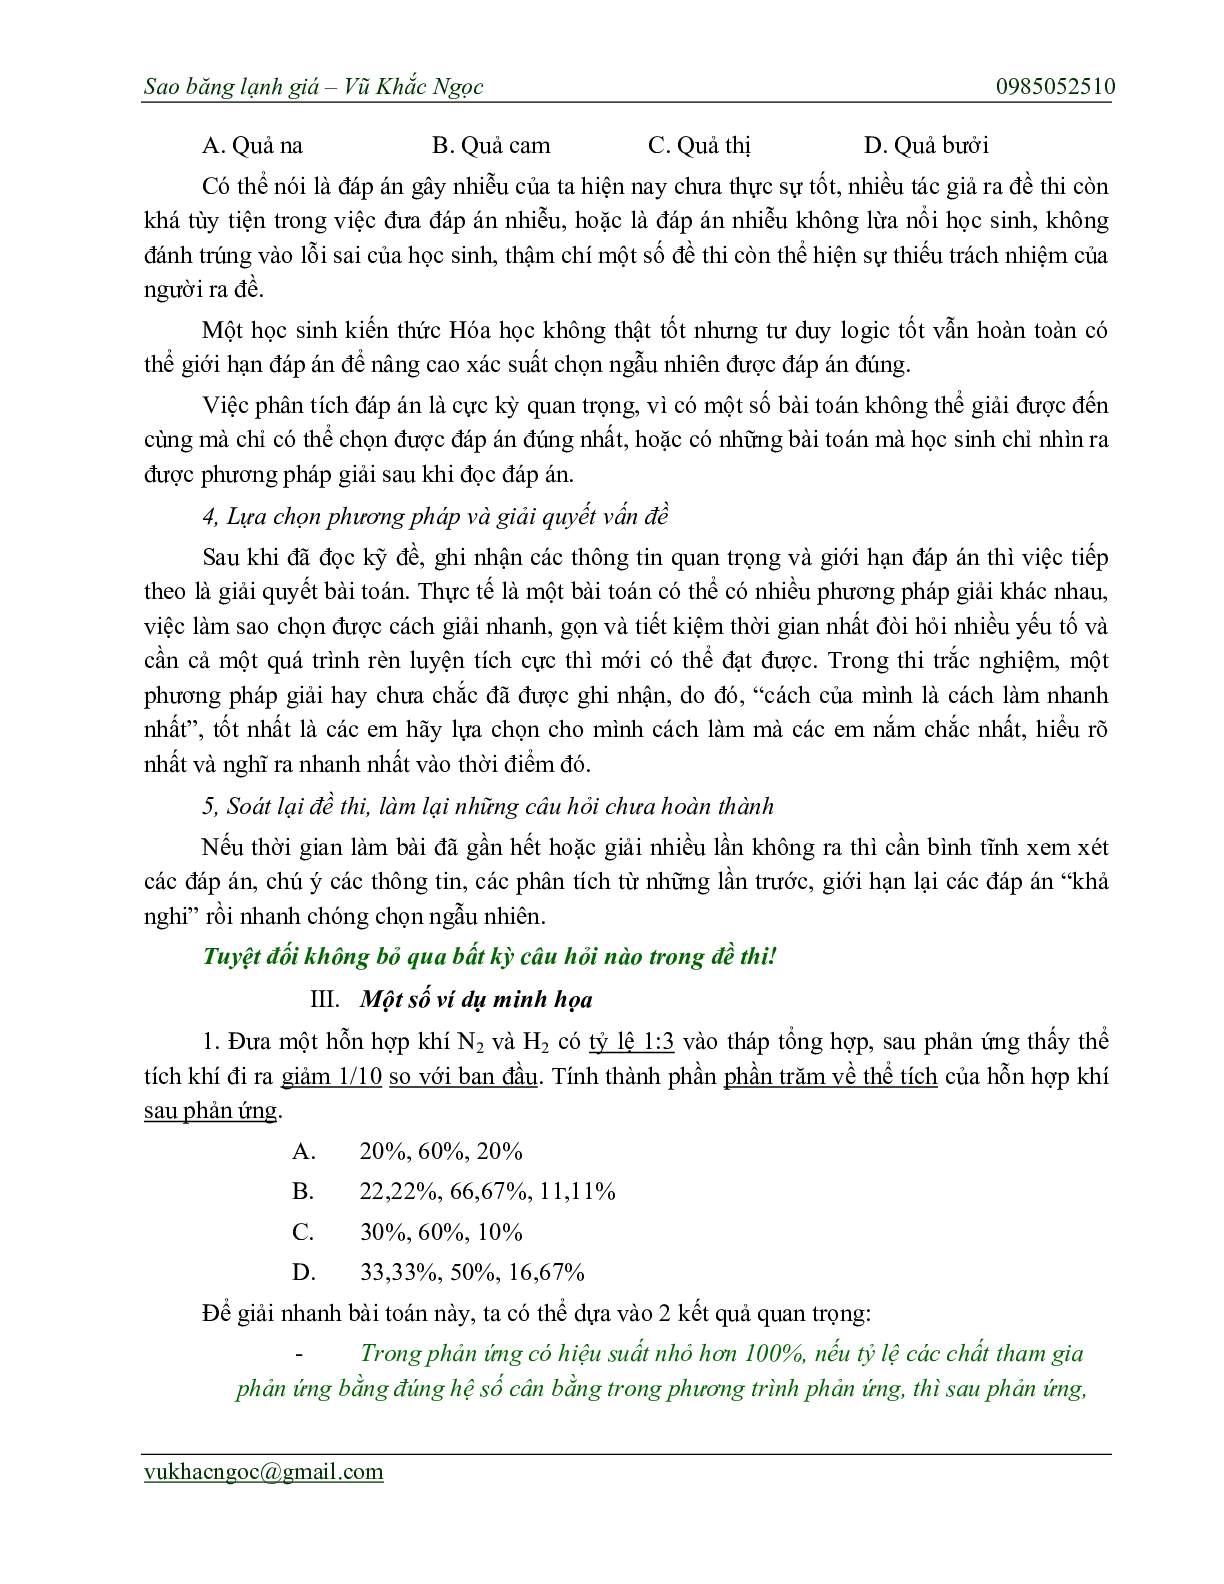 Chiến thuật chọn ngẫu nhiên trong bài thi trắc nghiệm môn Hóa học thi THPT Quốc Gia (trang 4)